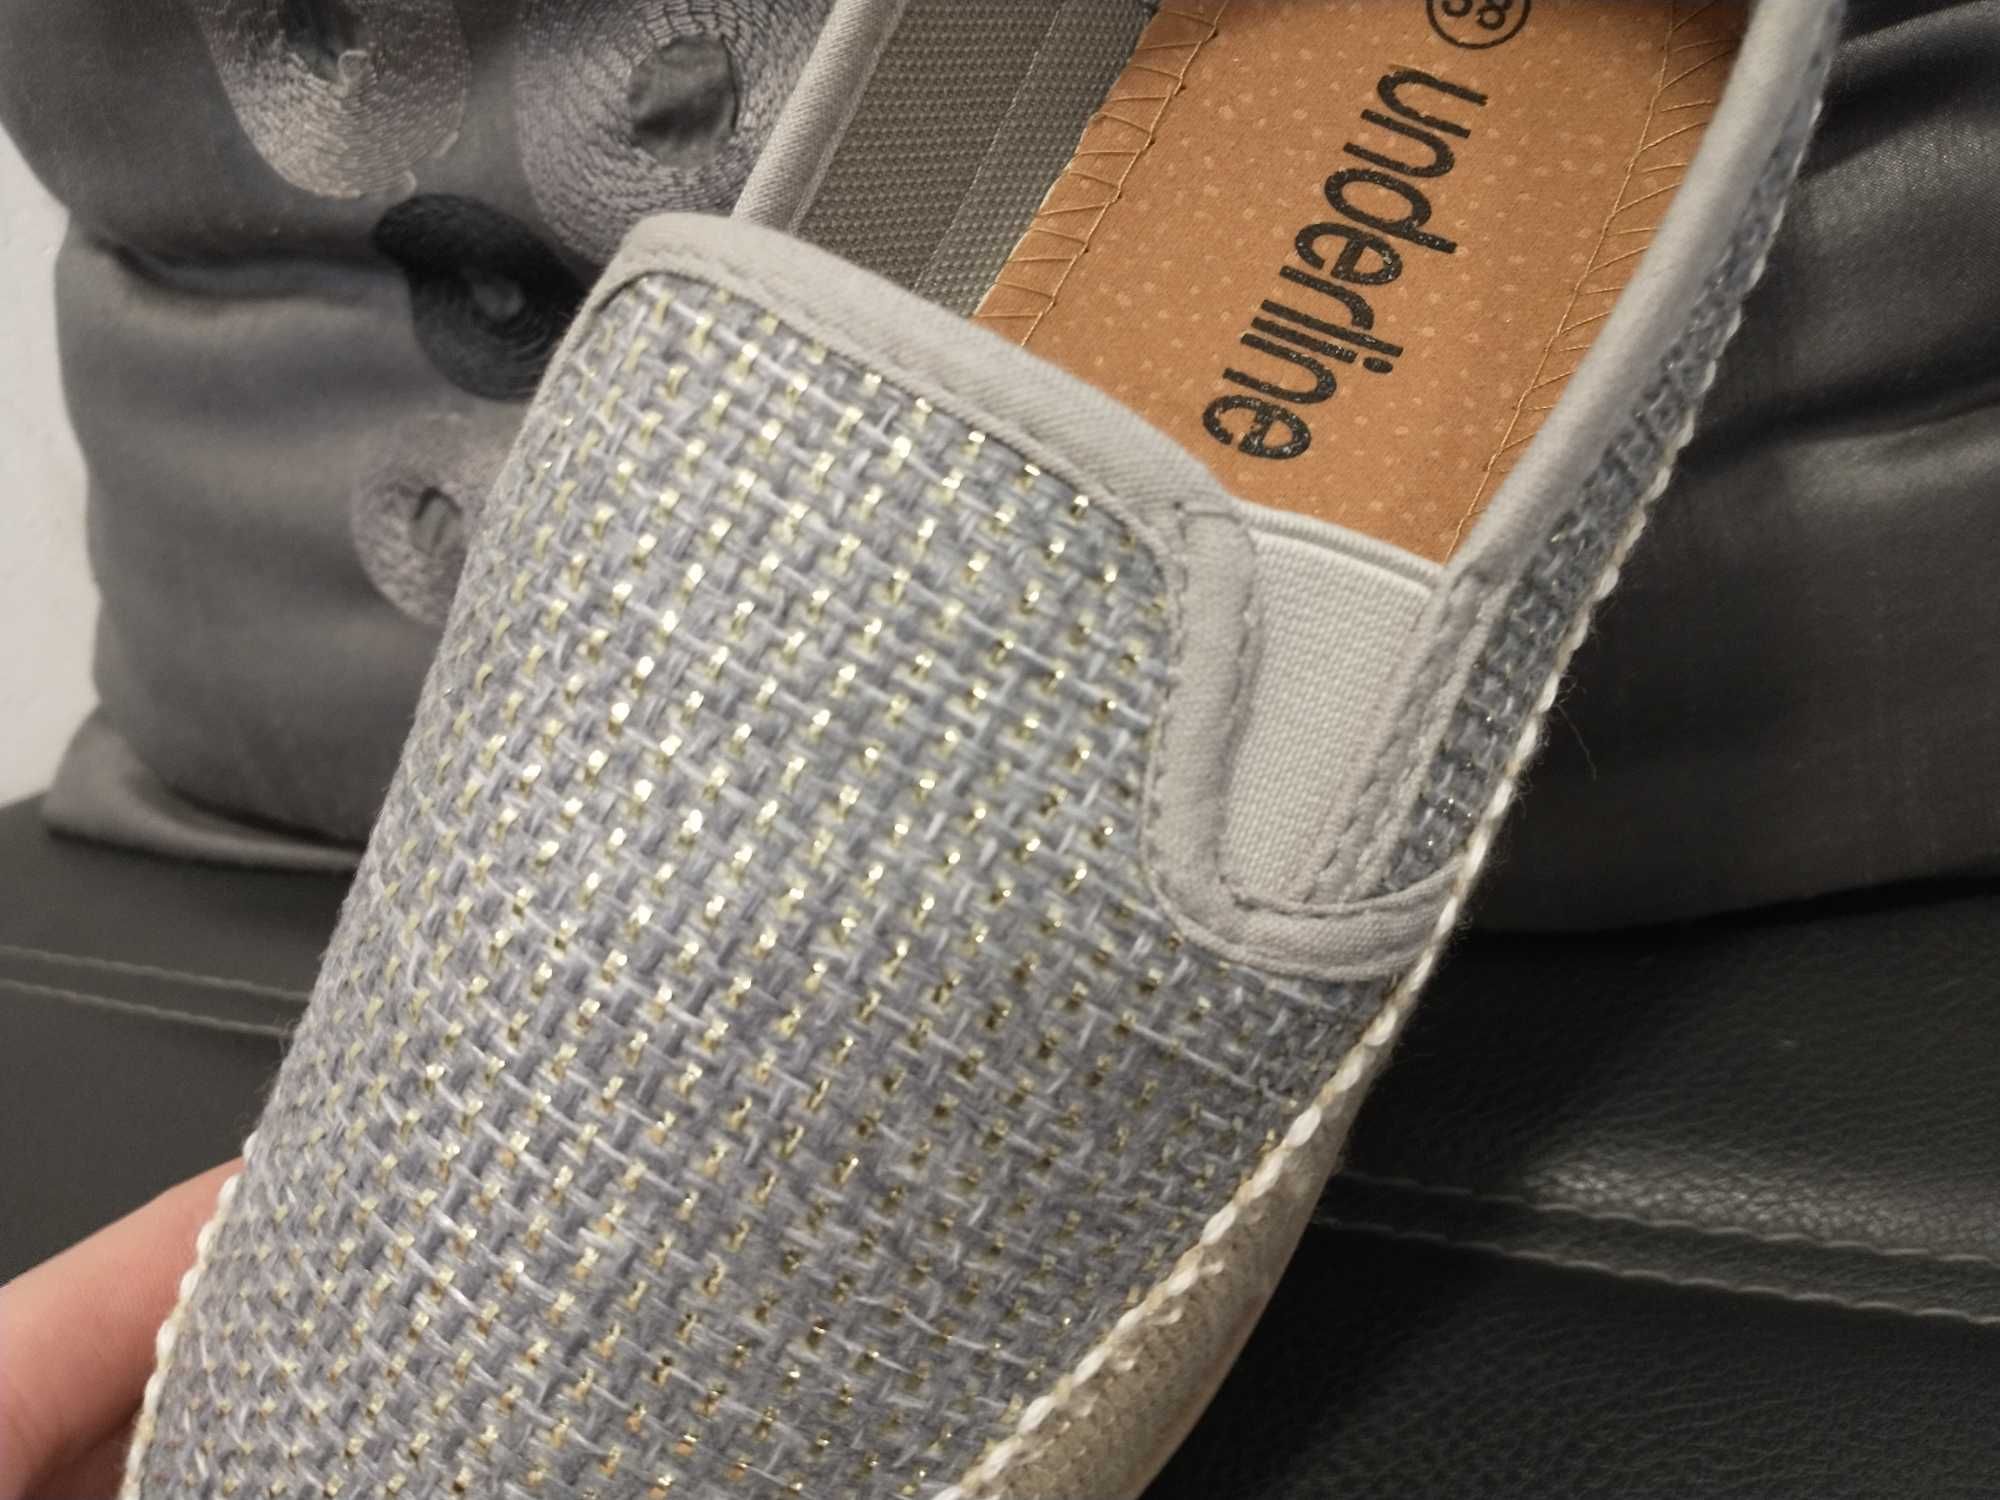 R 37 Nowe buty damskie tenisówki wciągane lekkie wygodne szare 23,5cm